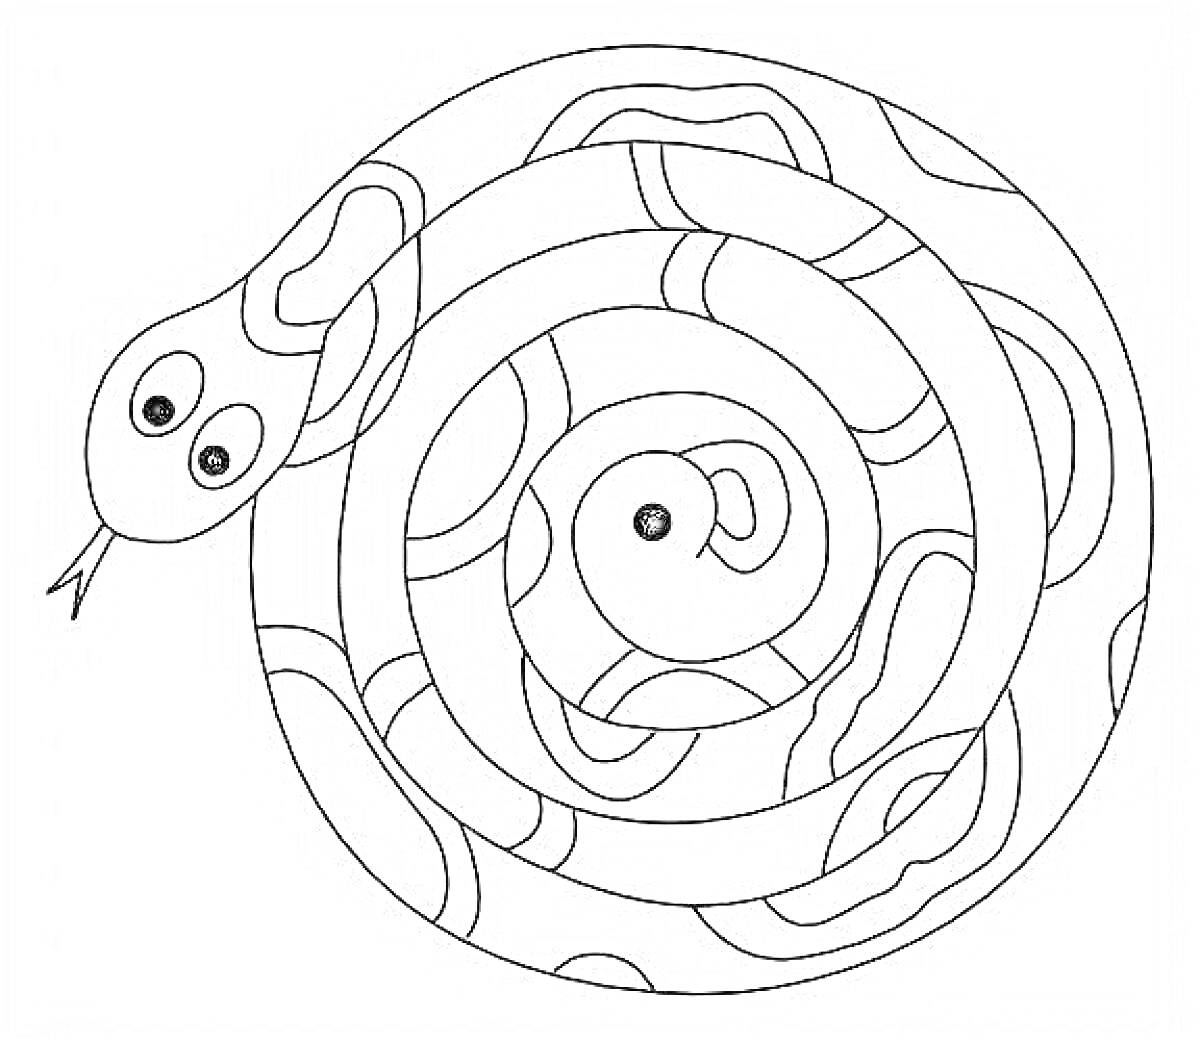 Раскраска Спираль змея с узорами и глазами